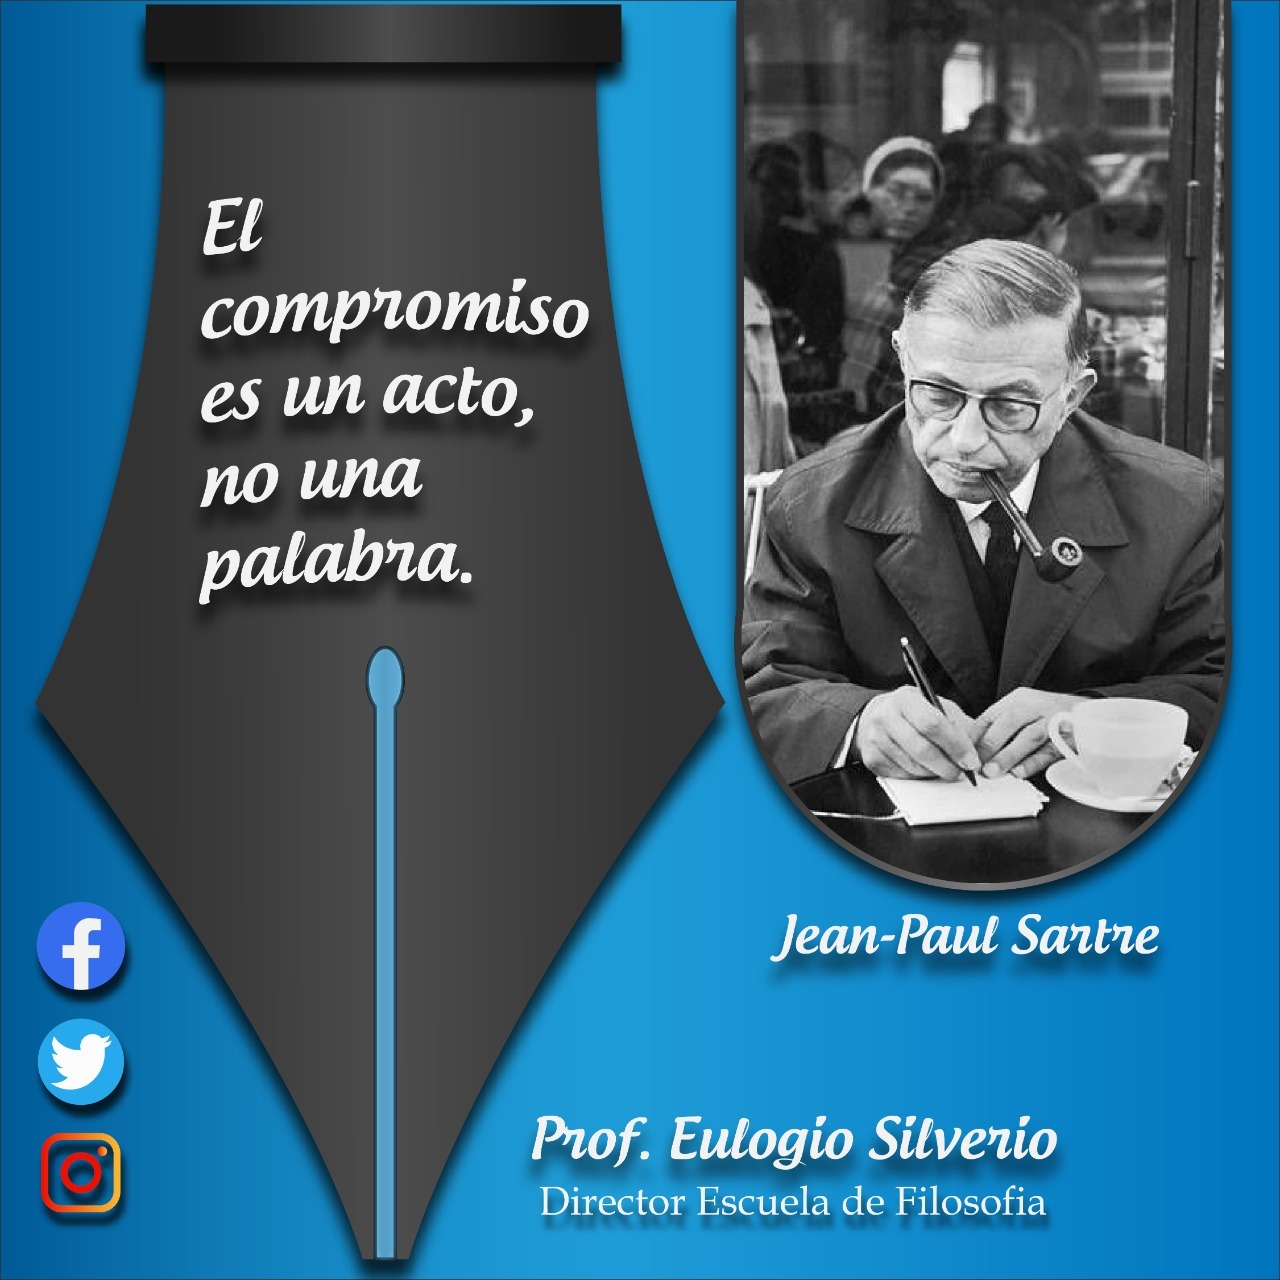 El compromiso - Sartre